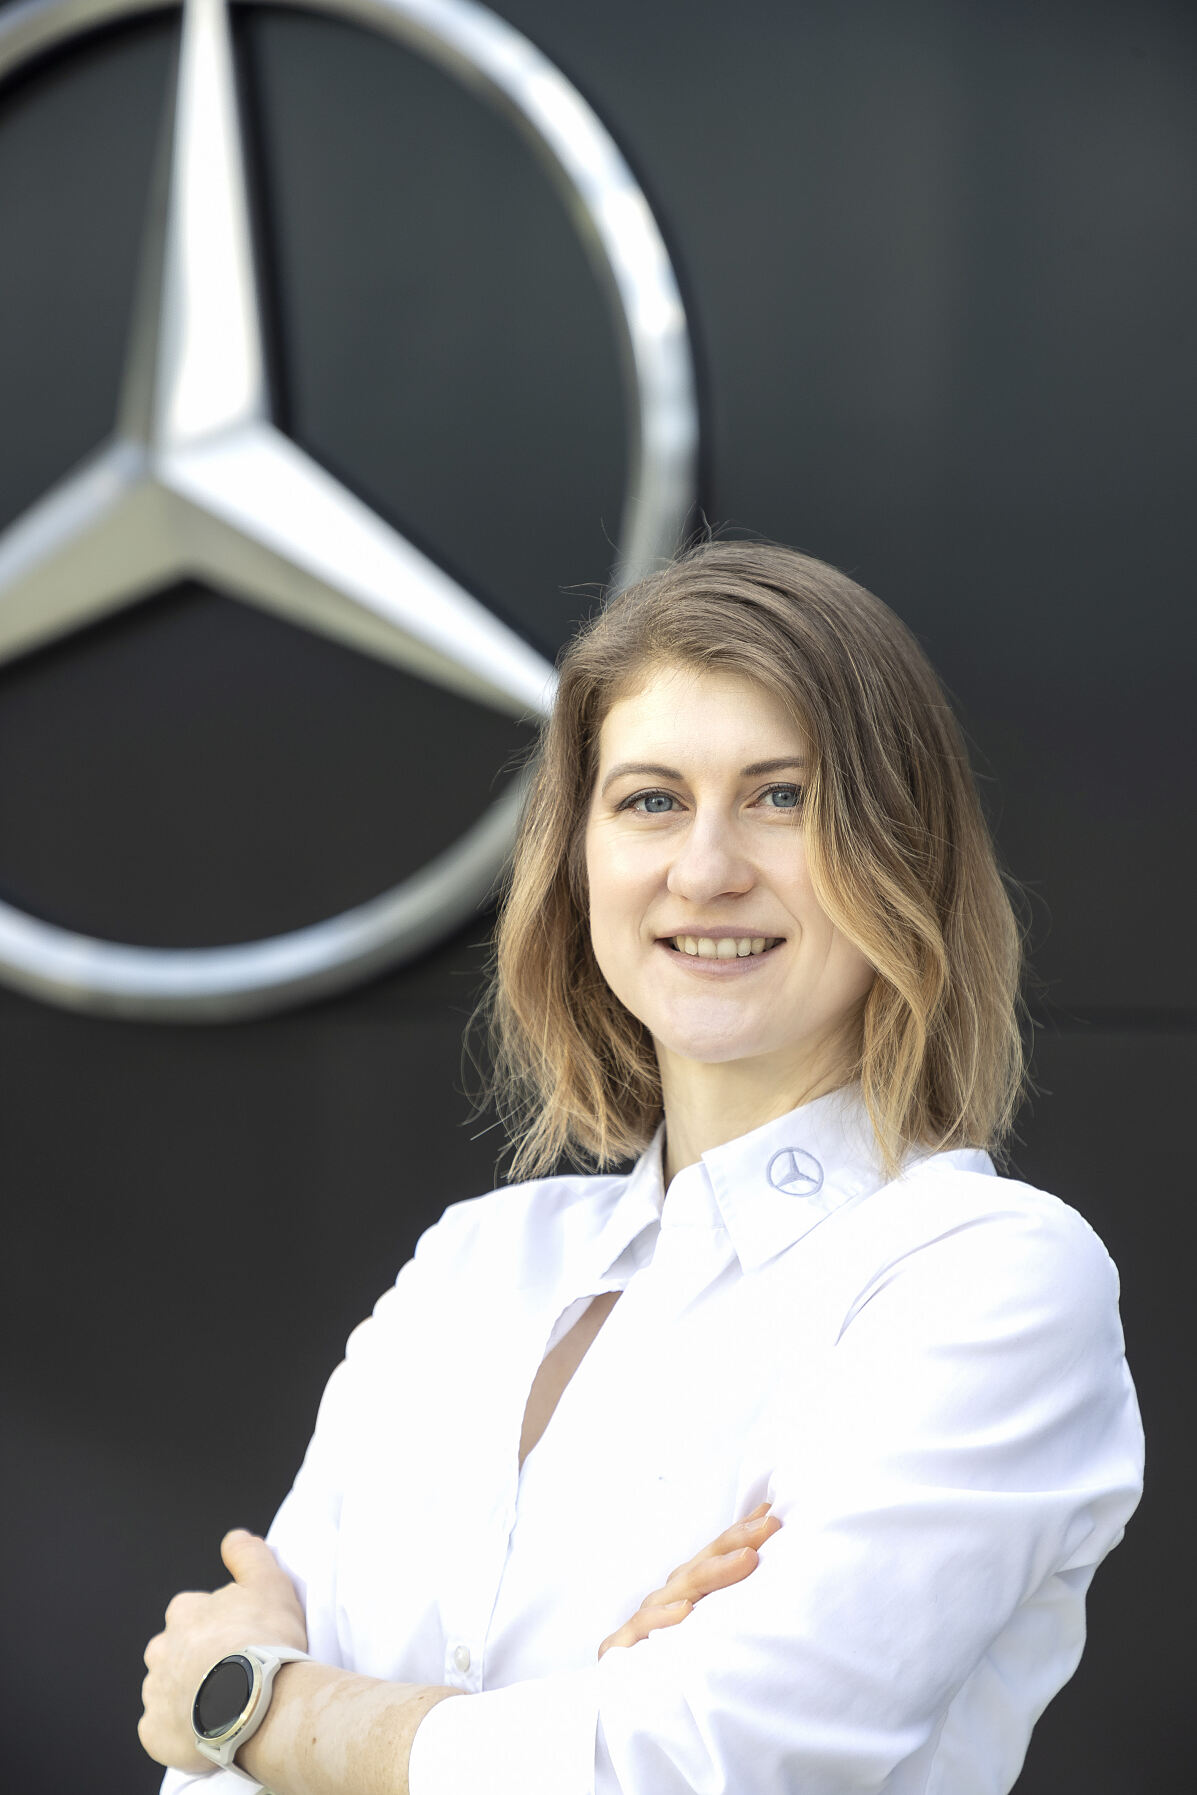 Mercedes-Benz Österreich: Bianca Lettner übernimmt Position als Pressesprecherin